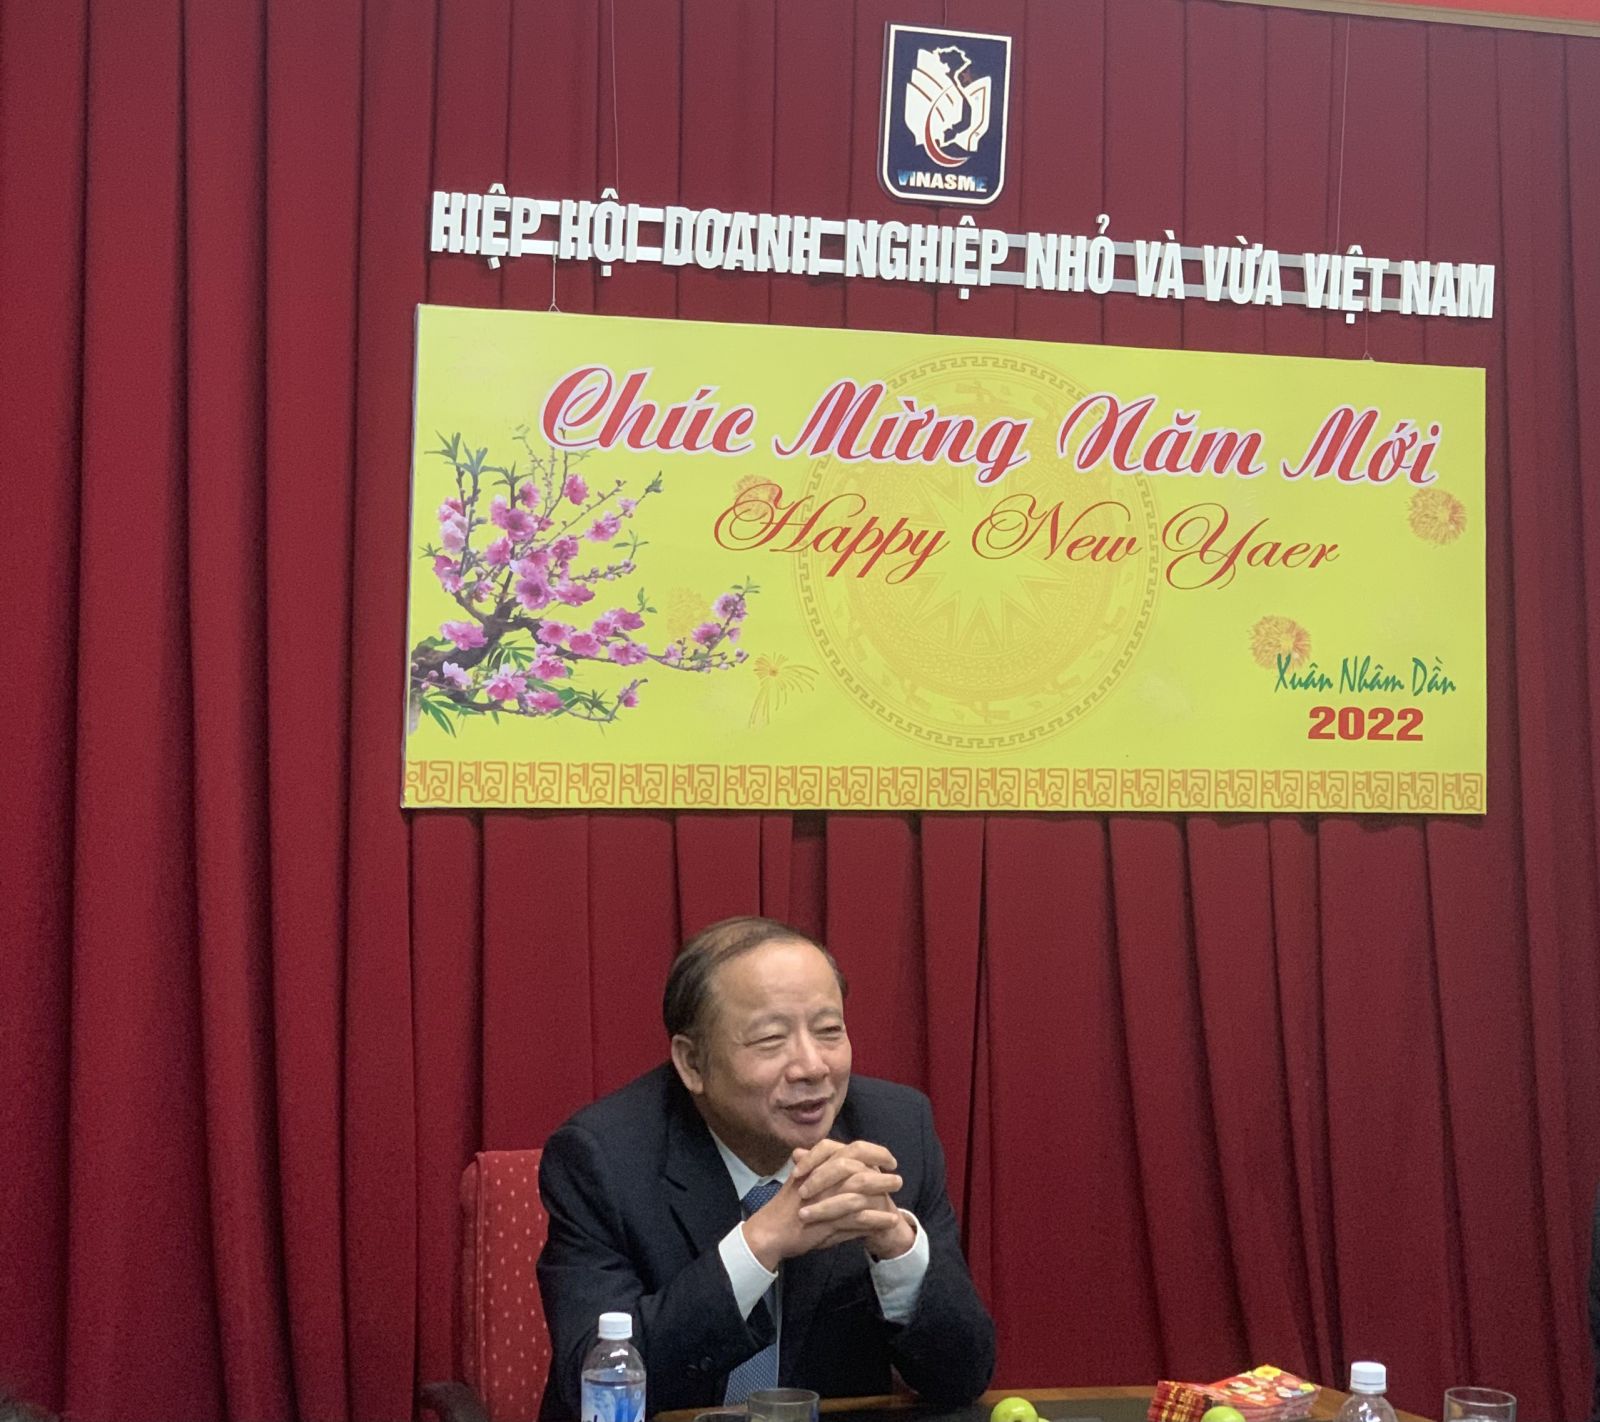 Ông Nguyễn Văn Thân - Chủ tịch Hiệp hội Doanh nghiệp nhỏ và vừa Việt Nam phát biểu chỉ đạo tại cuộc họp.